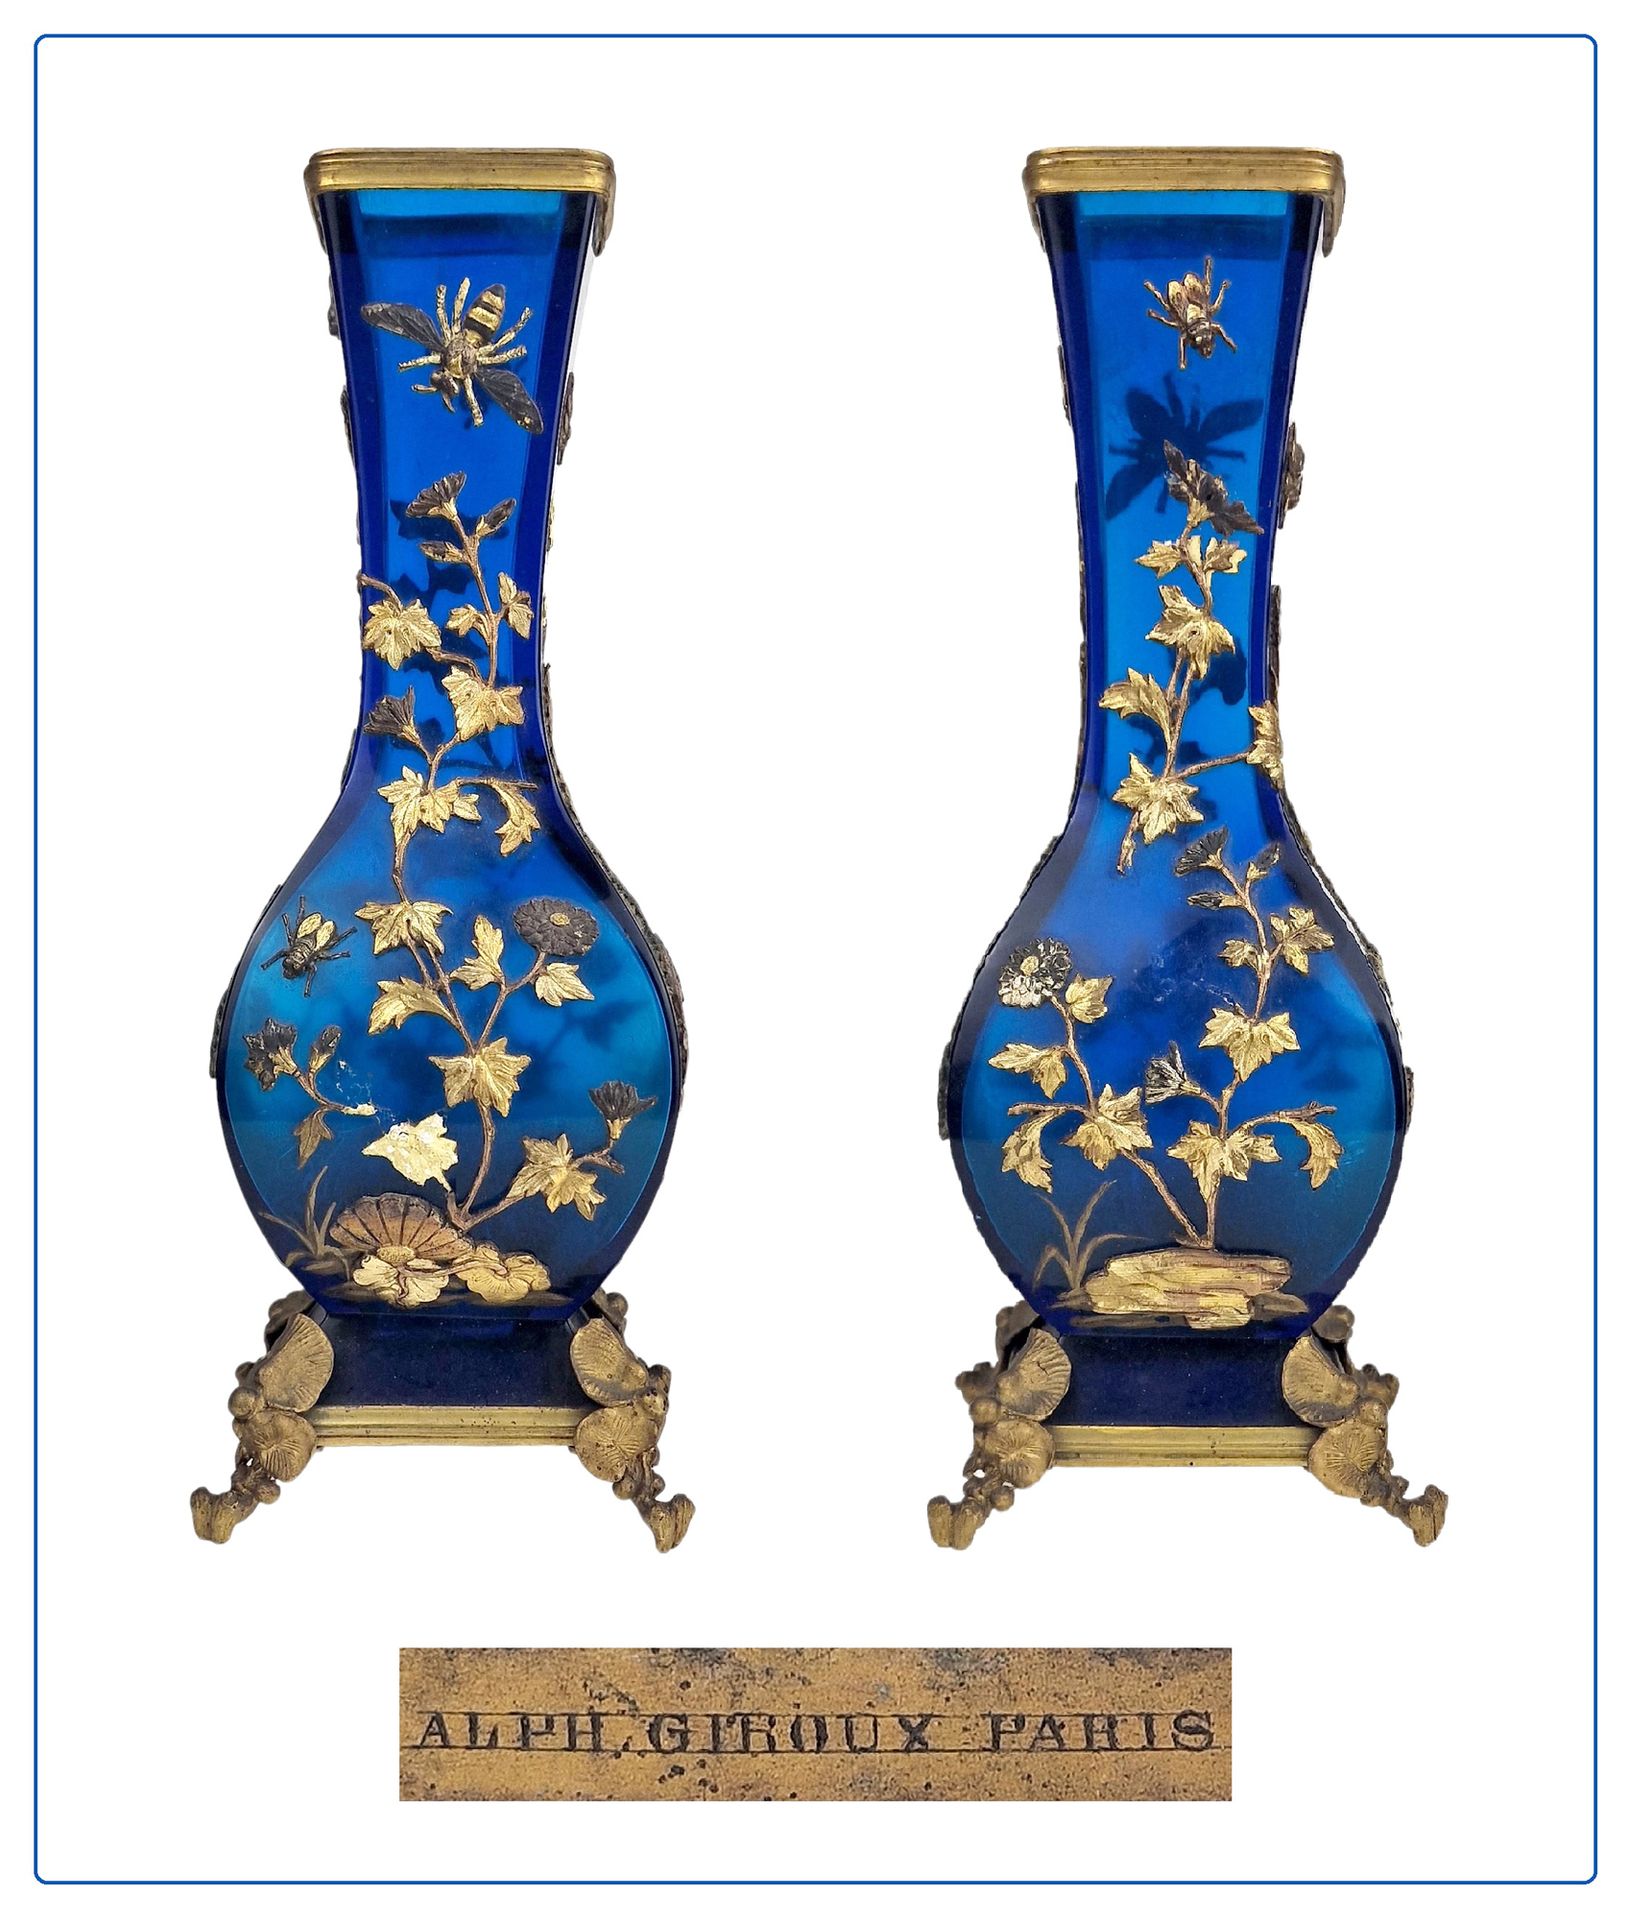 ALPHONSE GIROUX, PARIS 19ème SIECLE Ein Paar japanischer Vasen.



Aus bläuliche&hellip;